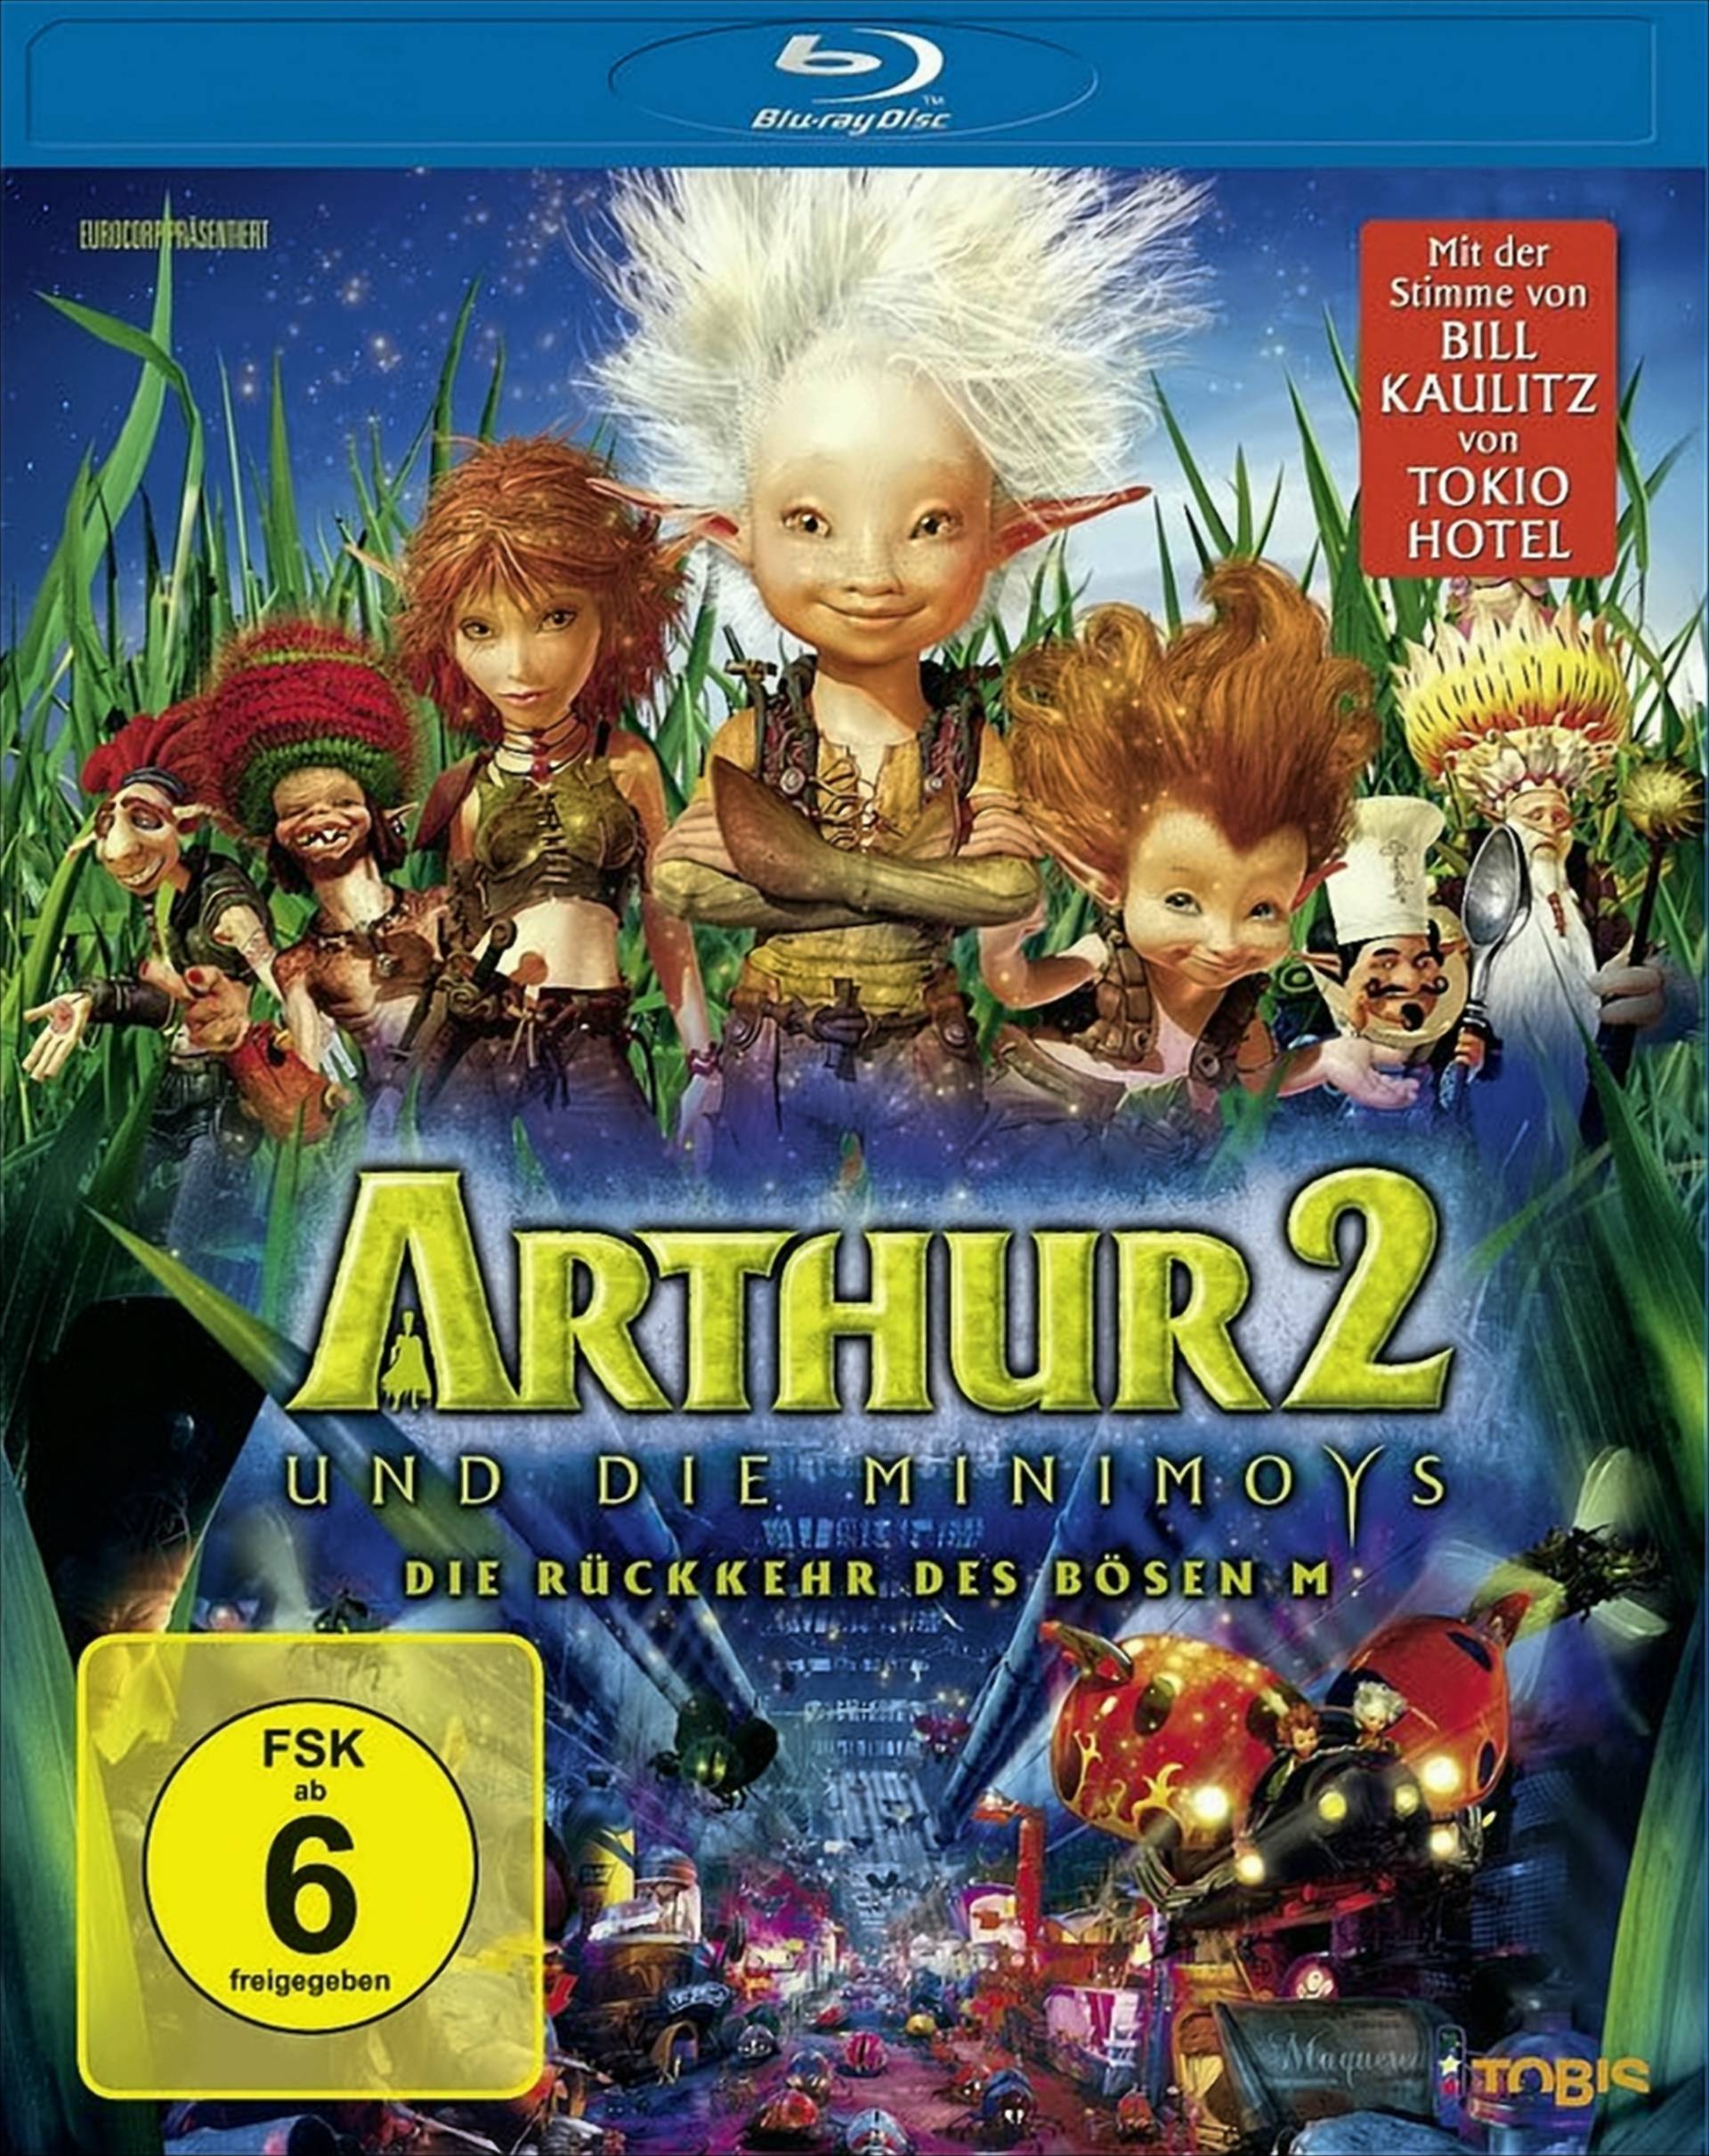 Arthur und die Minimoys 2 - Die Rückkehr des bösen M von Universum Film